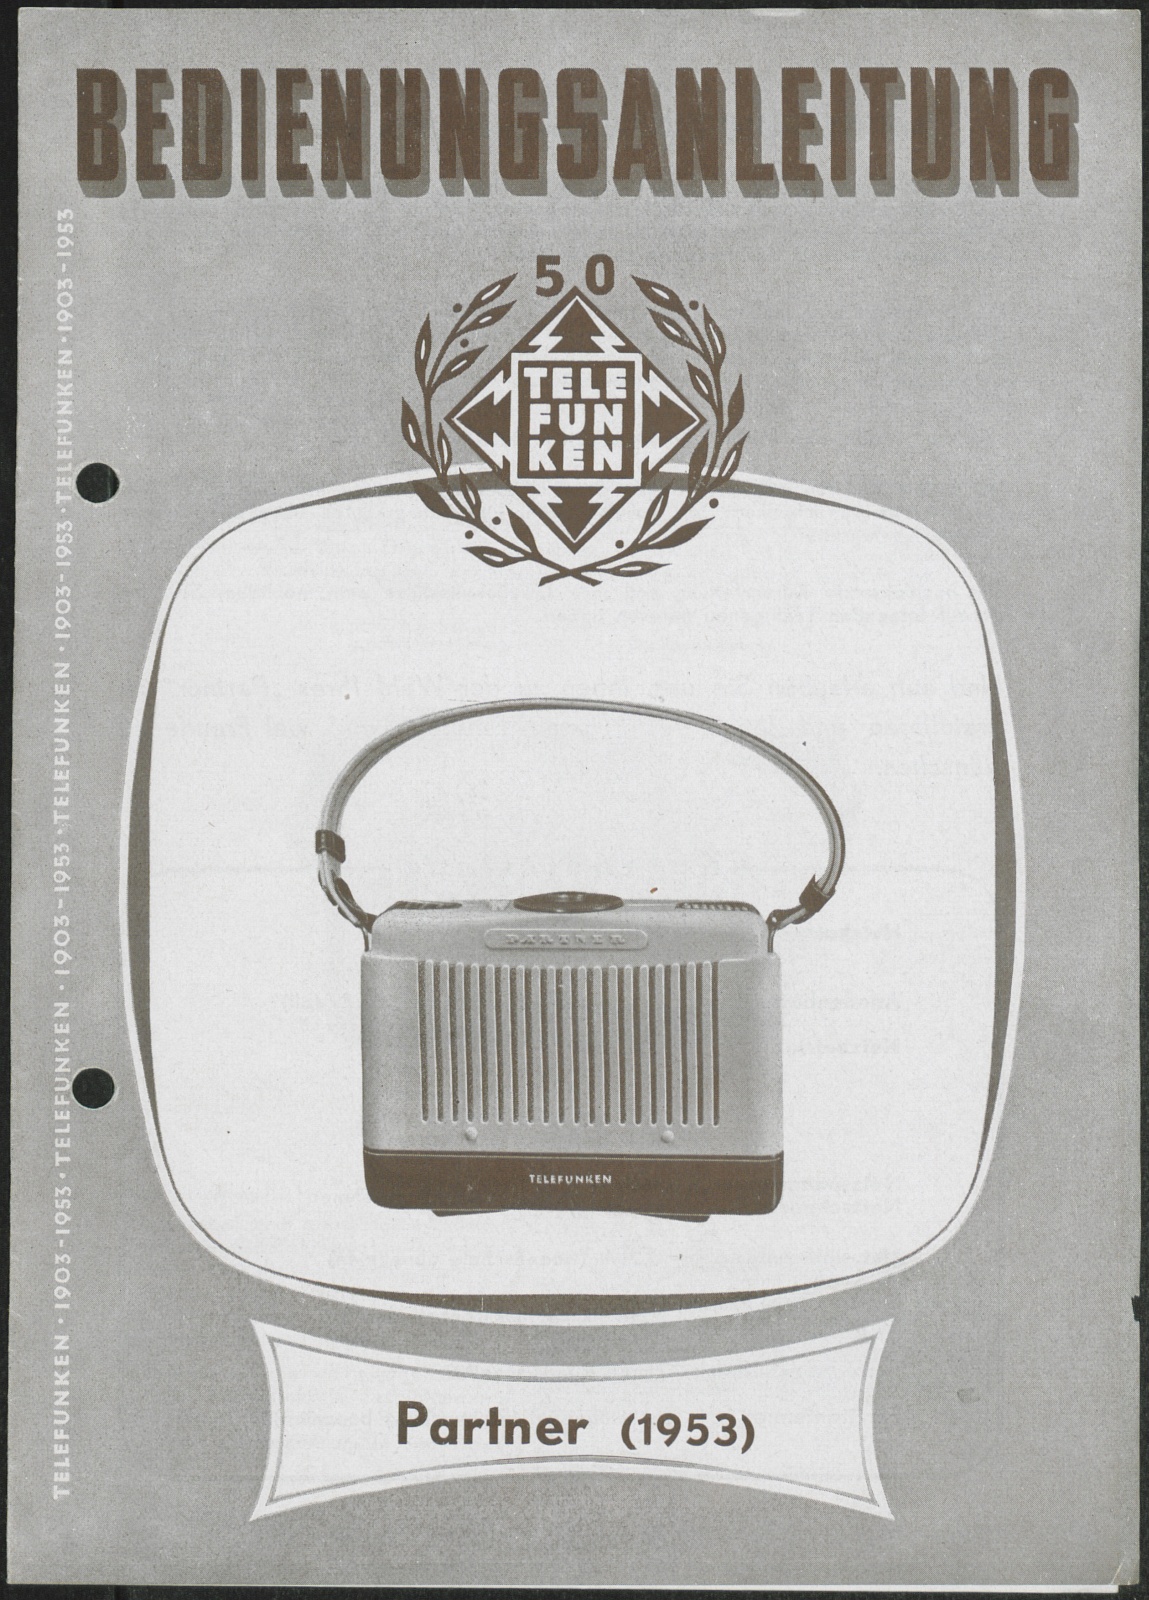 Bedienungsanleitung: Bedienungsanleitung Telefunken Partner (1953) (Stiftung Deutsches Technikmuseum Berlin CC0)